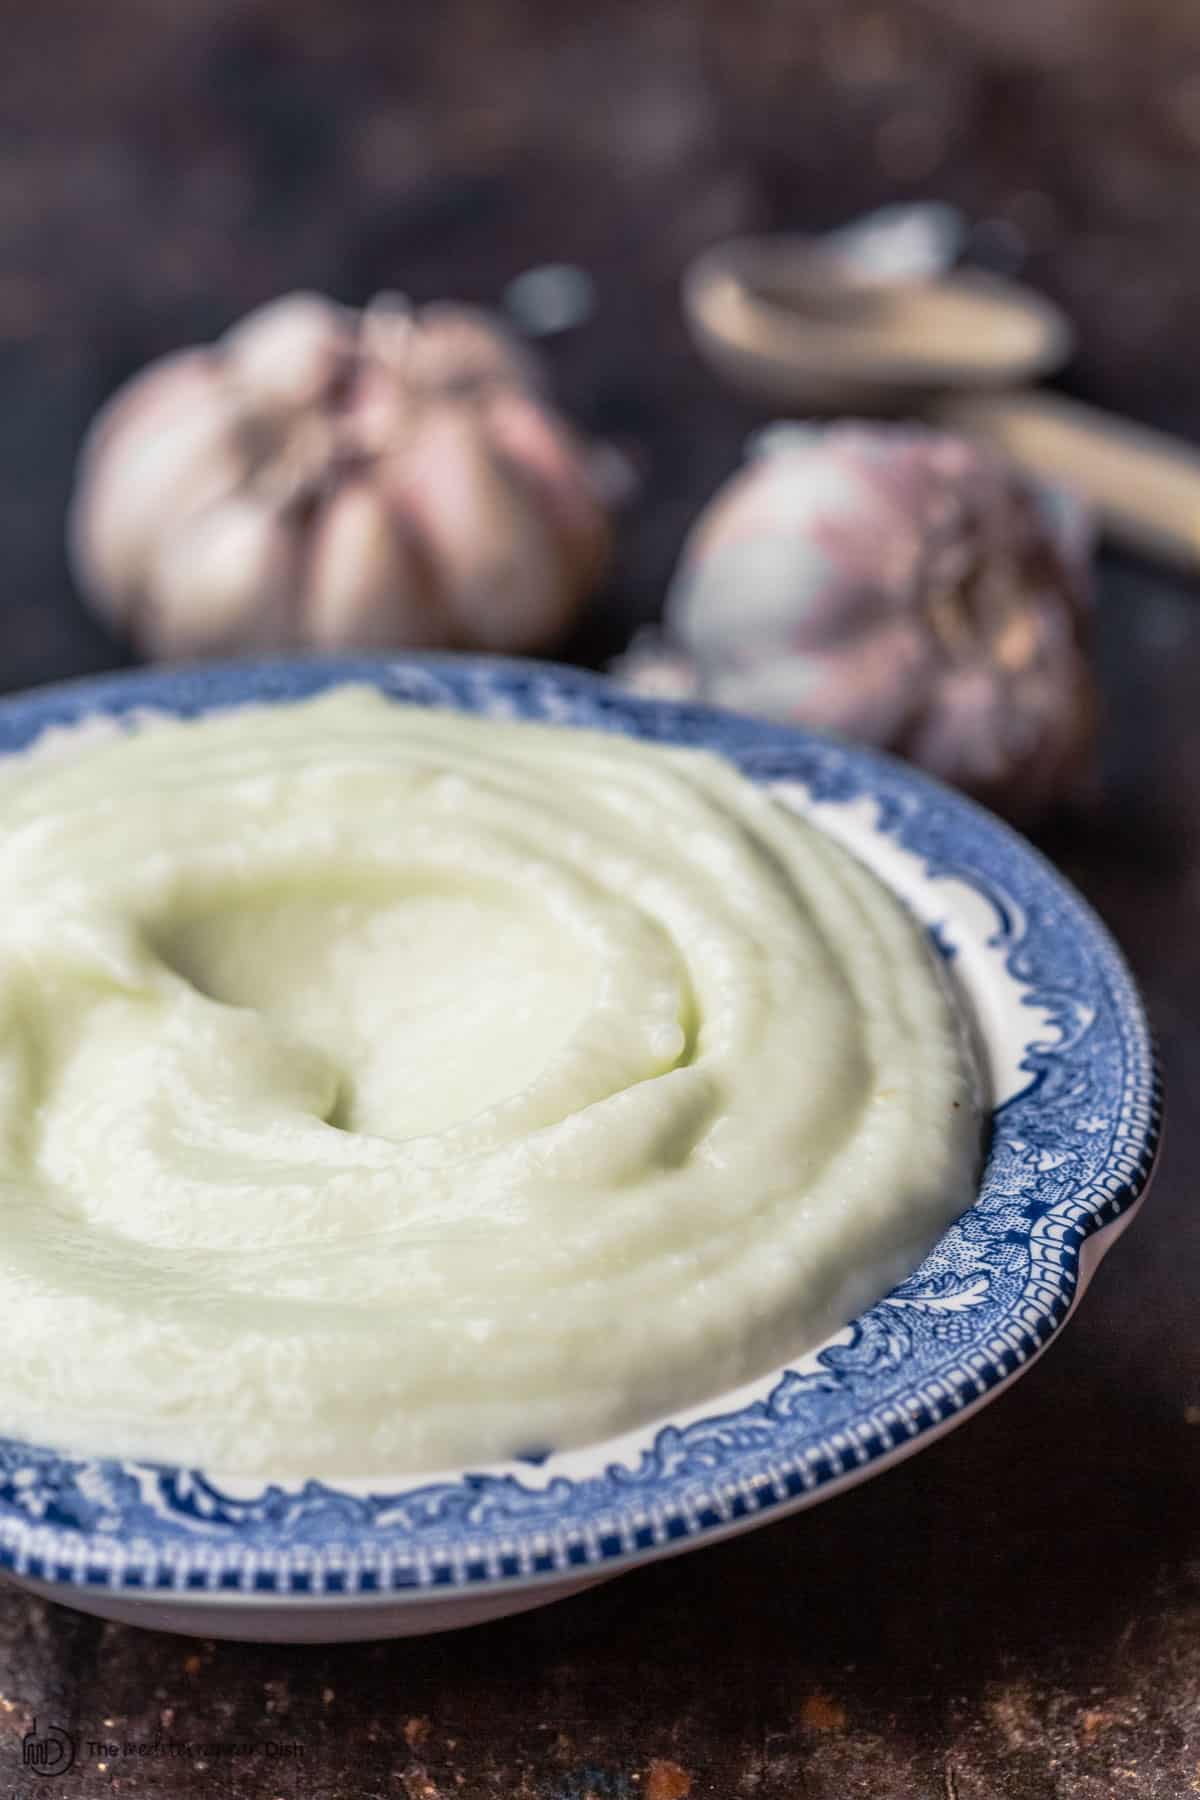 Garlic in Mediterranean cuisine